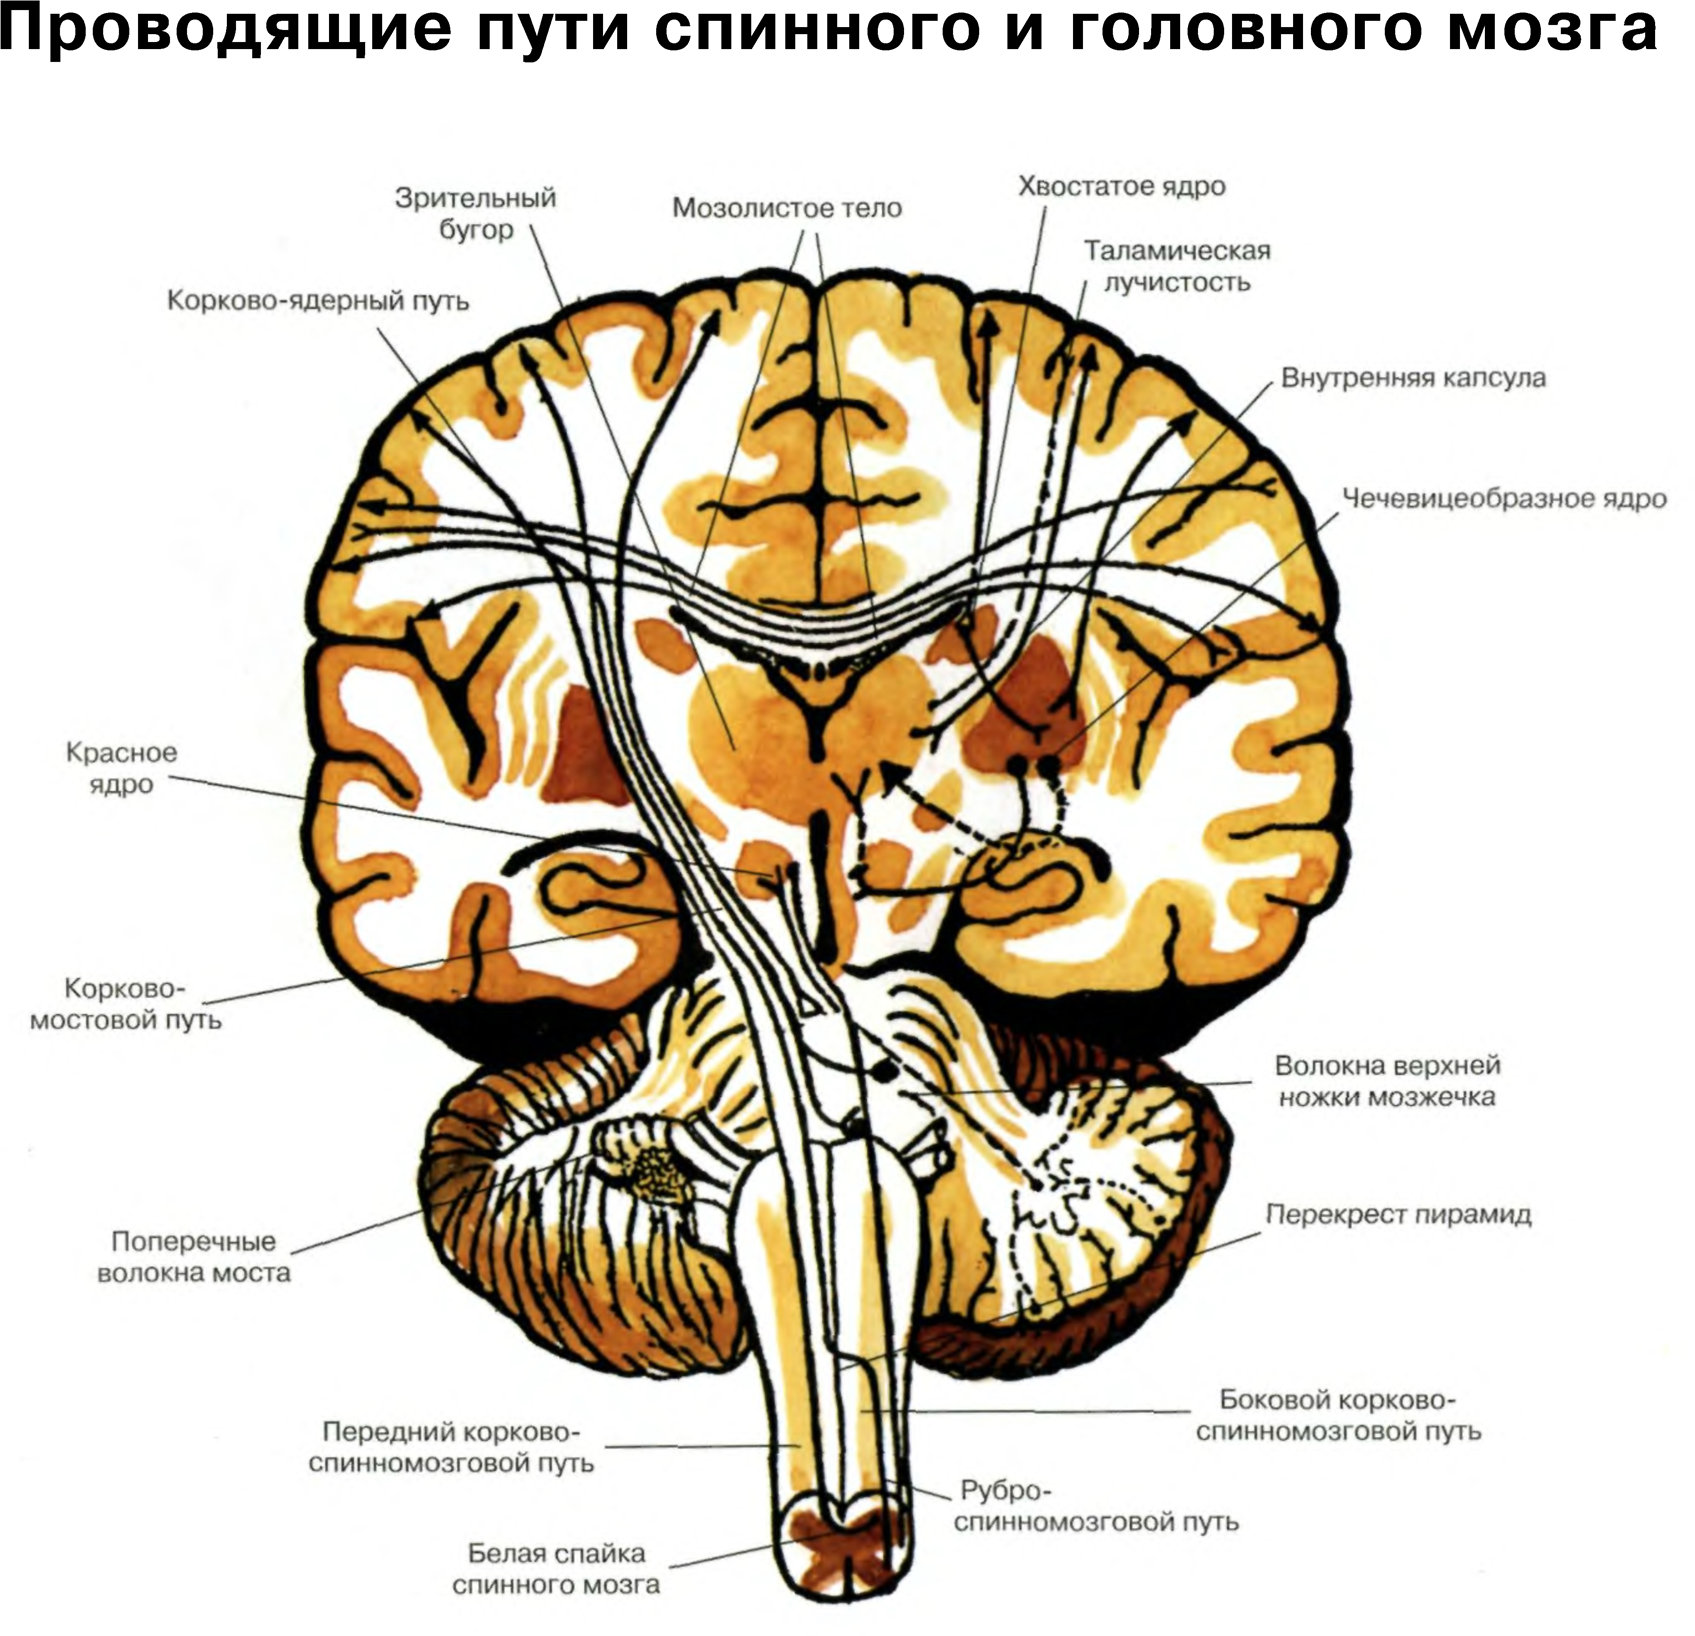 Группы проводящих путей. Проводящие пути головного мозга восходящие и нисходящие. Чувствительные проводящие пути спинного и головного мозга анатомия. Схему восходящих путей спинного и головного мозга.. Проводящие пути спинной мозг анатомия строение.